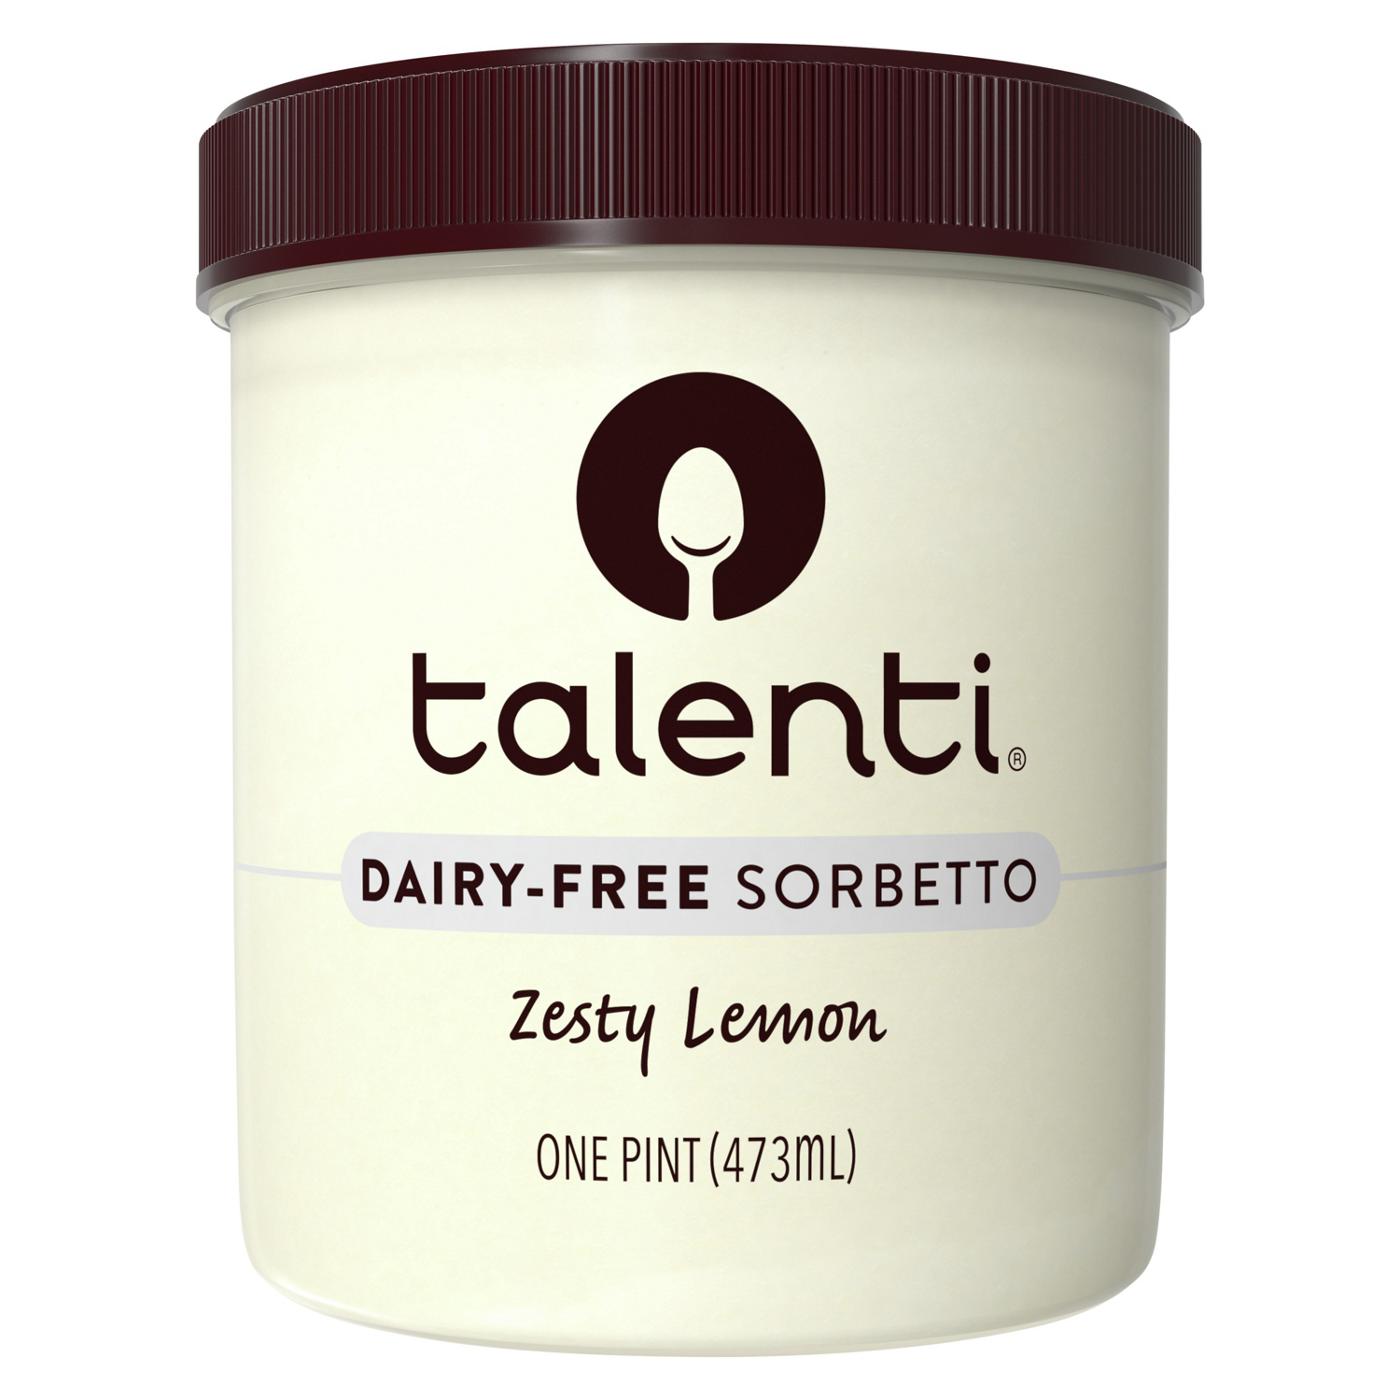 Talenti Zesty Lemon Dairy-Free Sorbetto; image 1 of 6